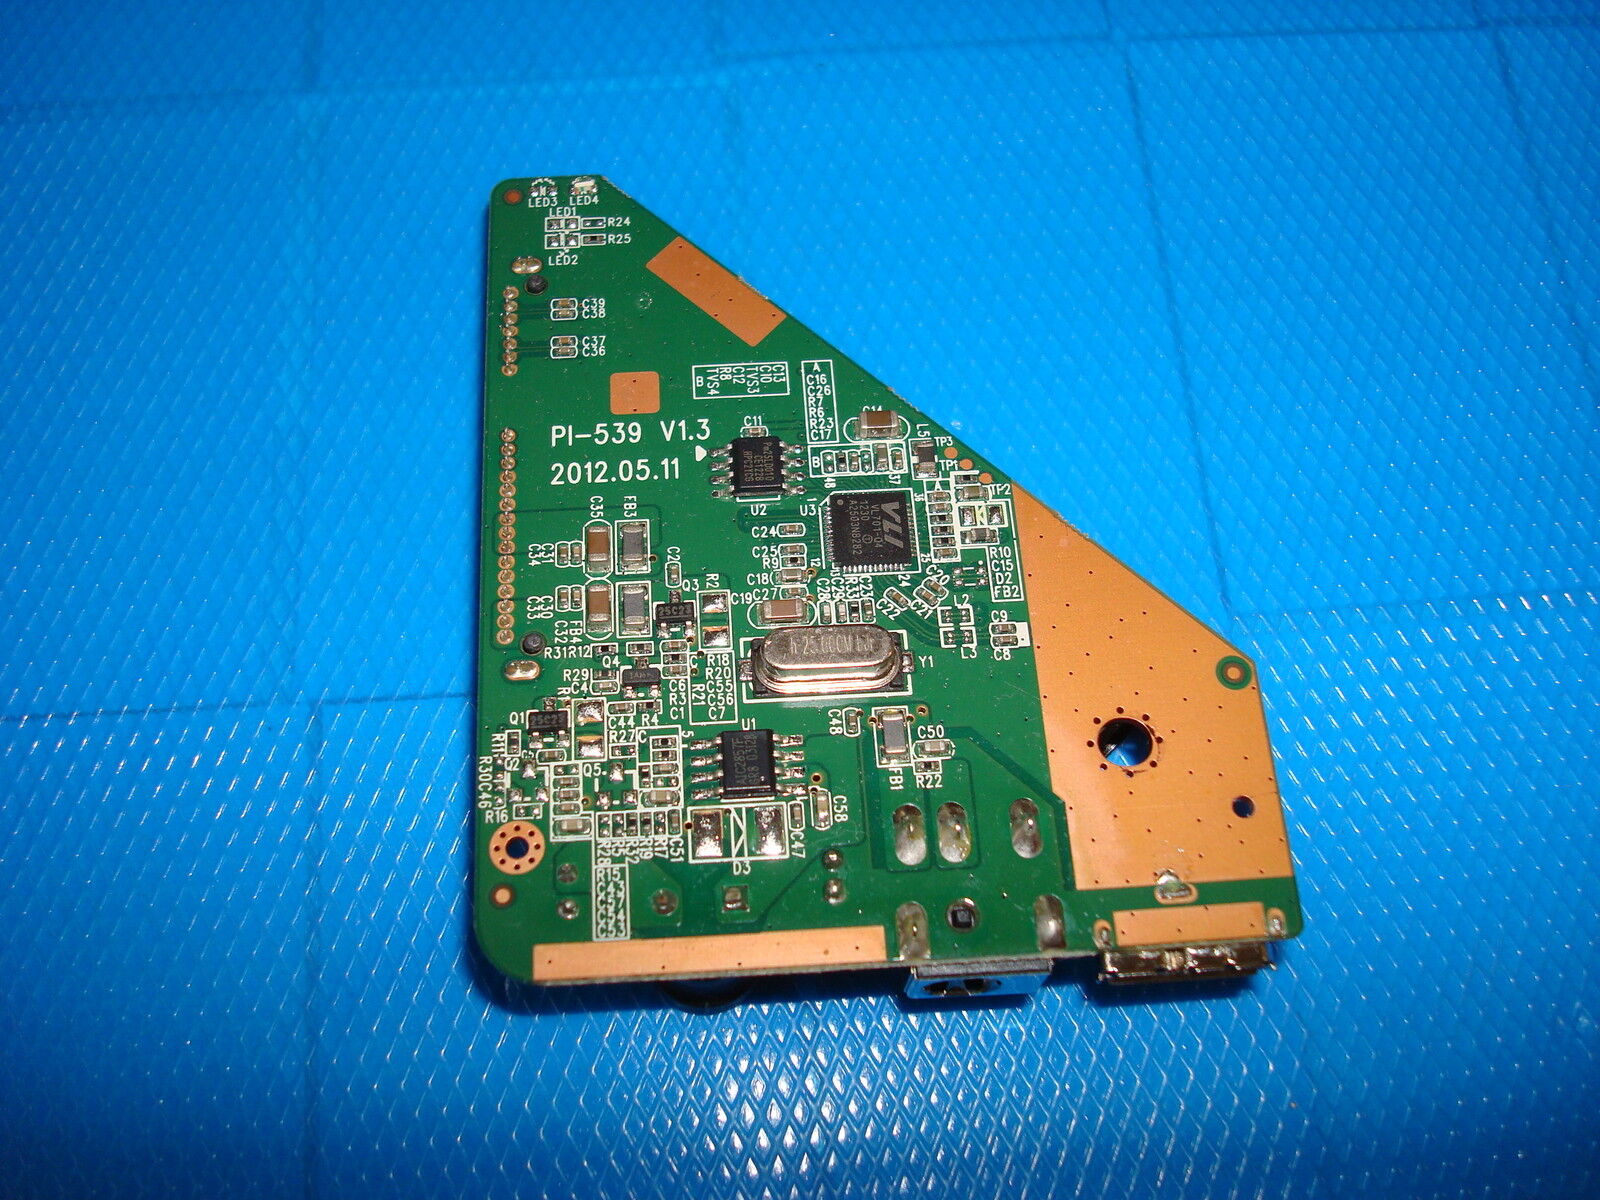 TOSHIBA Canvio Controller Board USB 3.0 1TB/2TB/3TB - PI-539 V1.3 2012.05.11